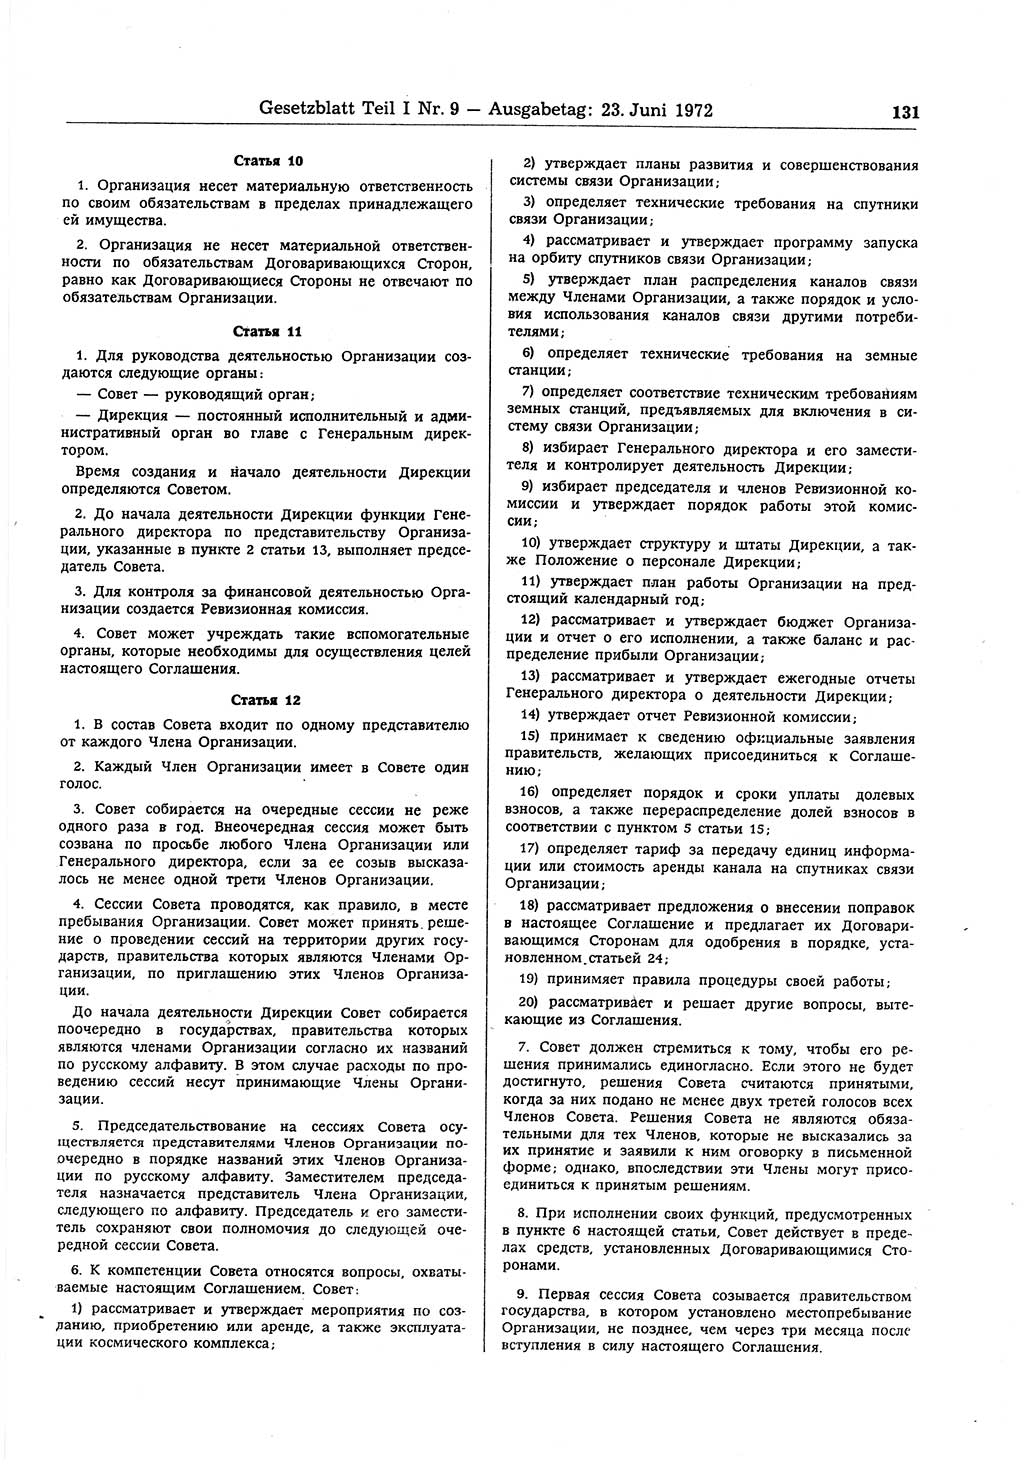 Gesetzblatt (GBl.) der Deutschen Demokratischen Republik (DDR) Teil Ⅰ 1972, Seite 131 (GBl. DDR Ⅰ 1972, S. 131)